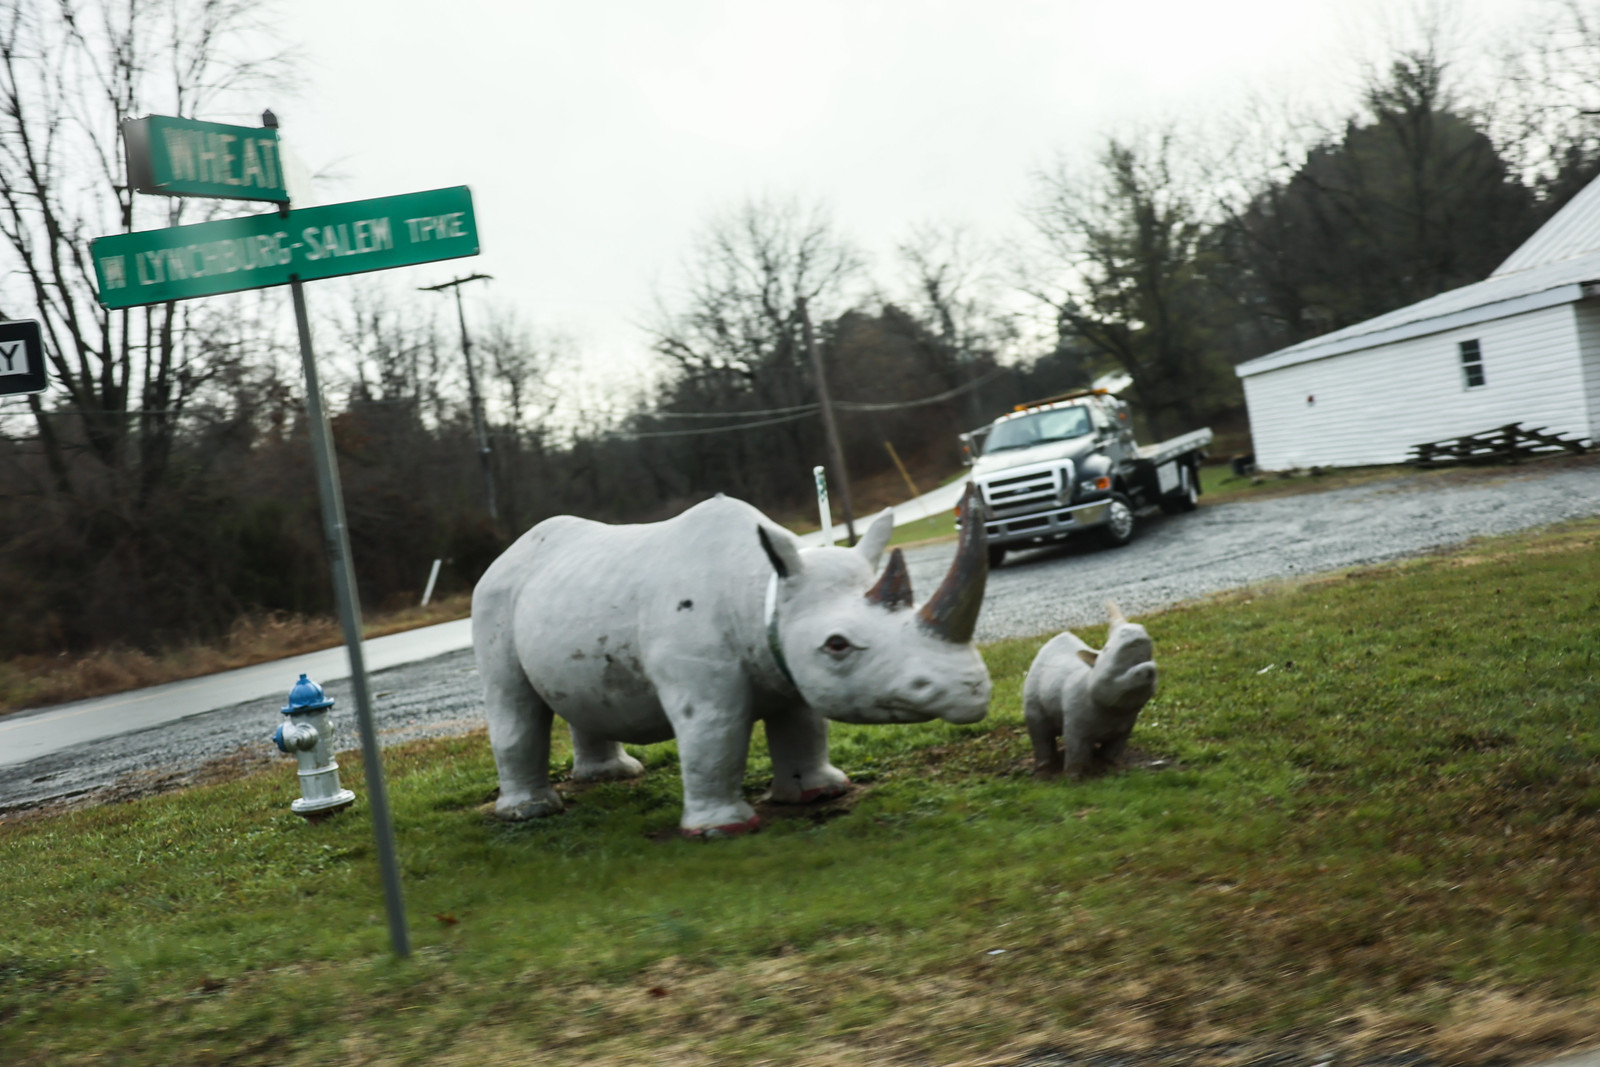 rhino statue at Wheat and Lynchburg-Salem Turnpike